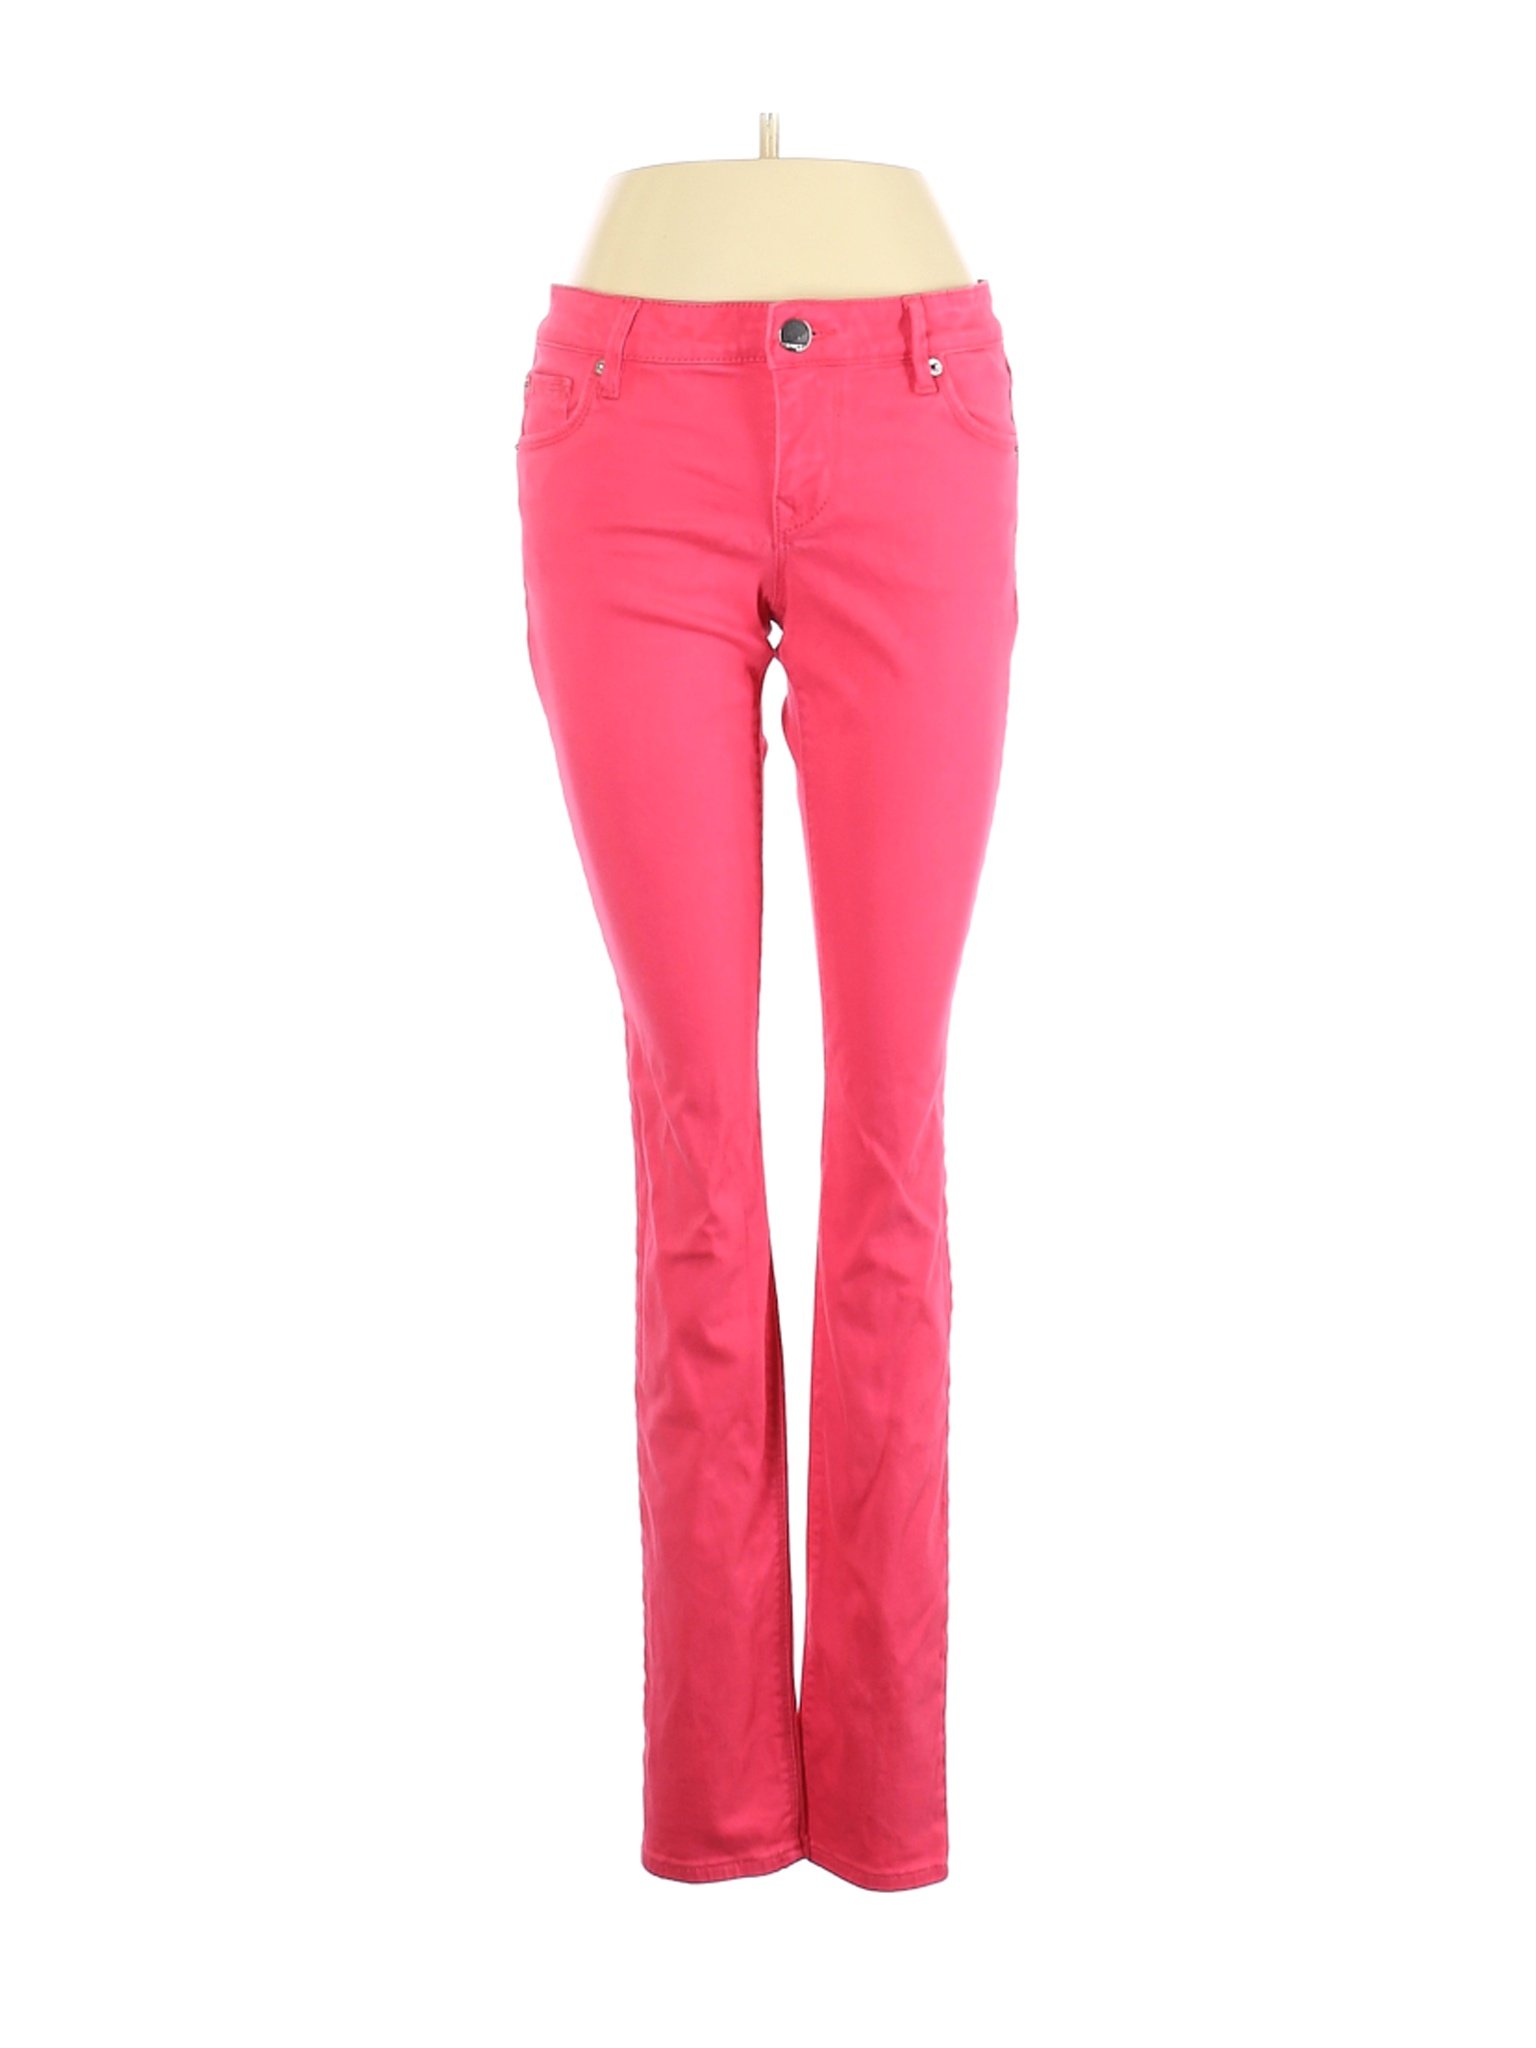 Express Jeans Women Pink Jeans 4 | eBay